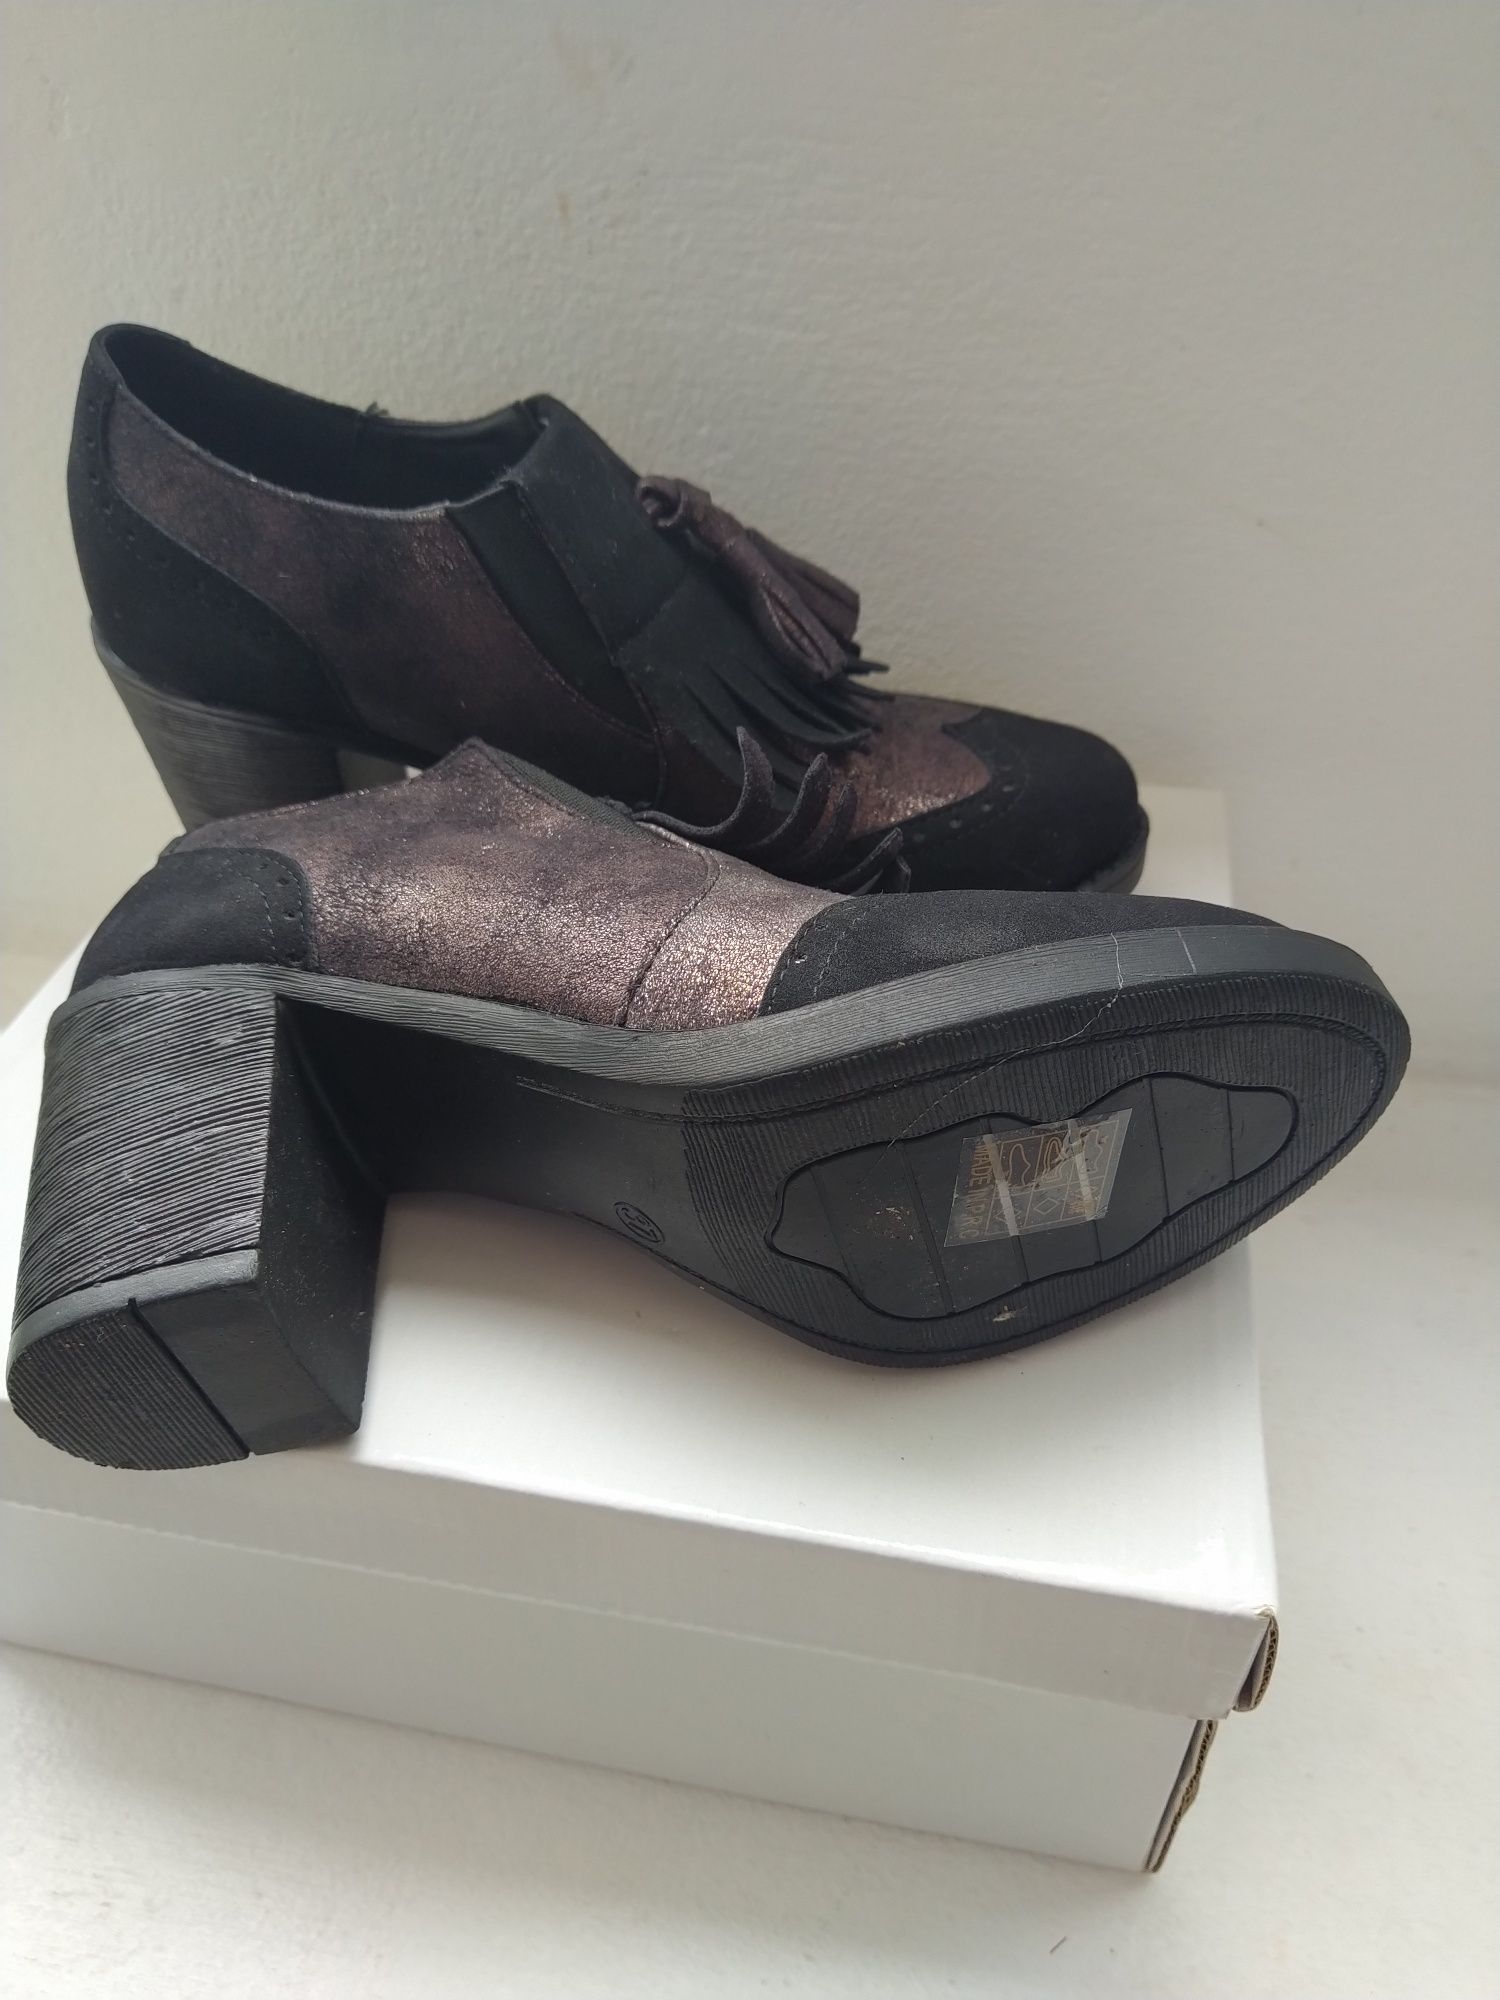 Sapatos pretos, muito elegantes - Tamanho 37 - Novos!